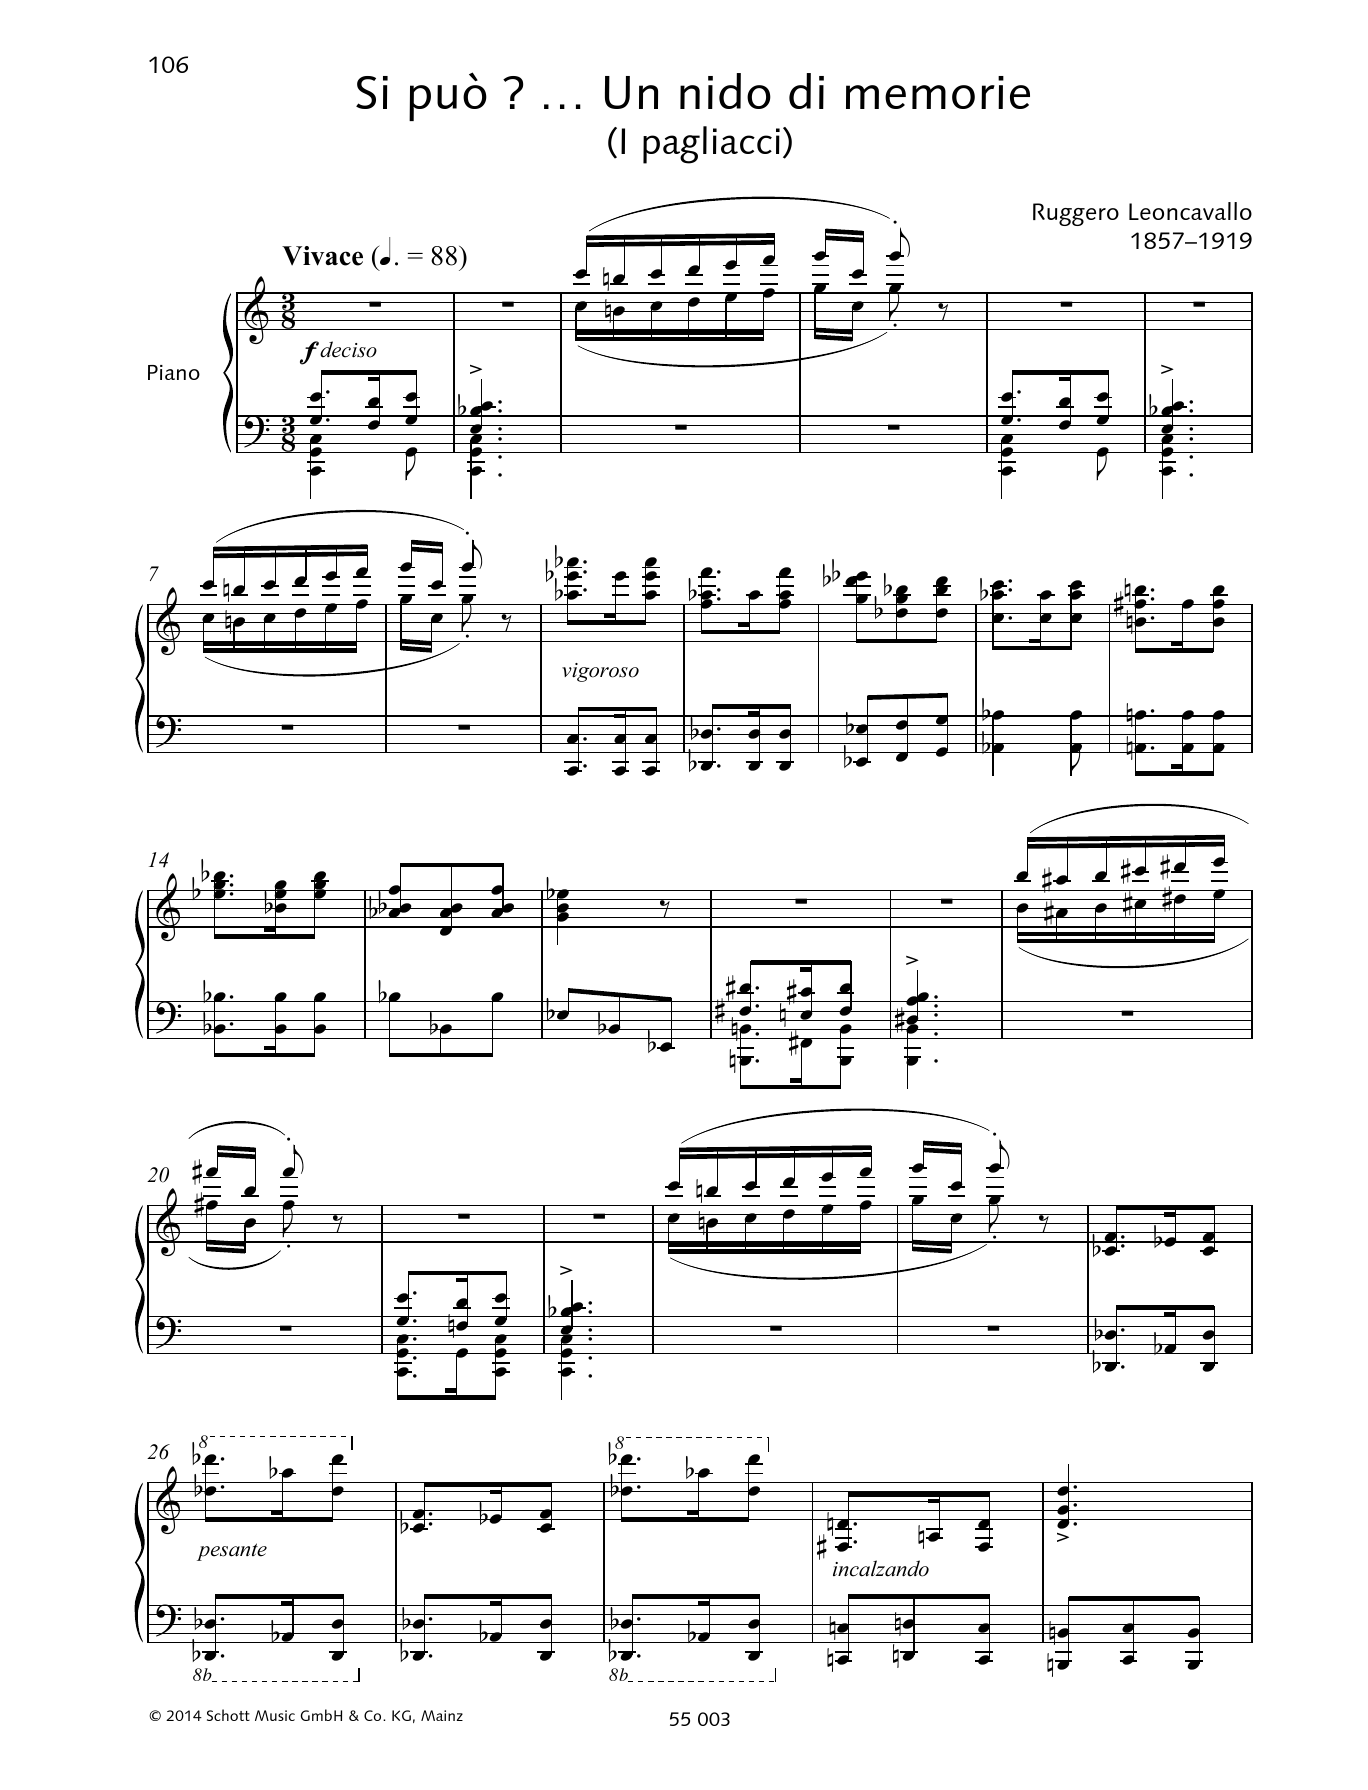 Download Ruggiero Leoncavallo Si può? ... Un nido di memorie Sheet Music and learn how to play Piano & Vocal PDF digital score in minutes